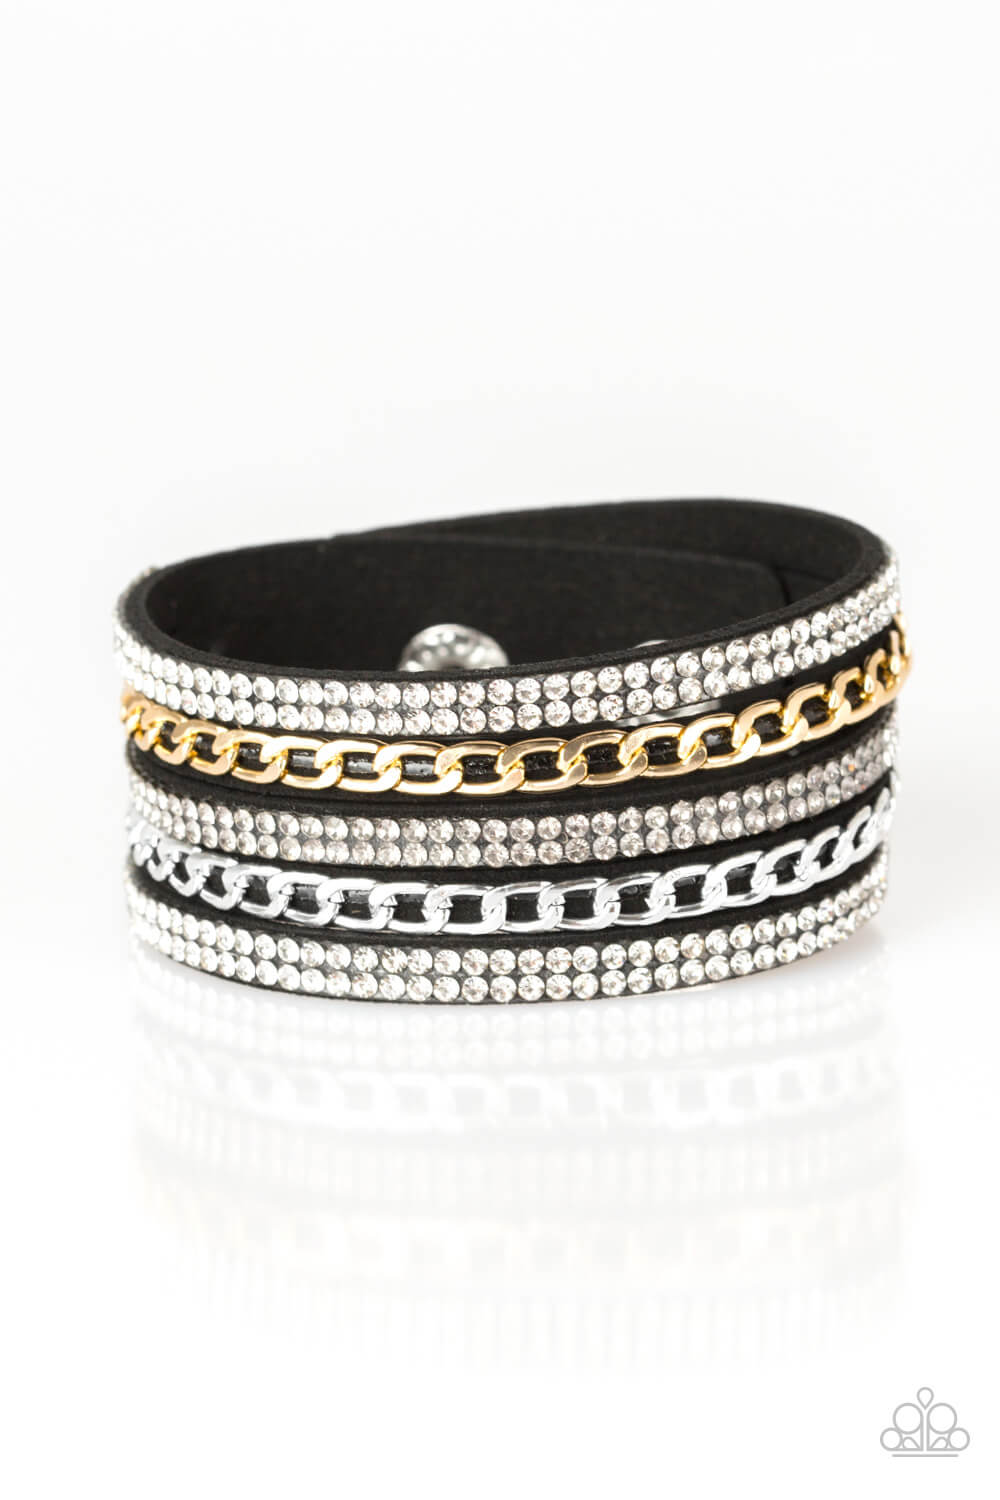 Fashion Fiend - Black Snap Wrap Urban Bracelet - Princess Glam Shop